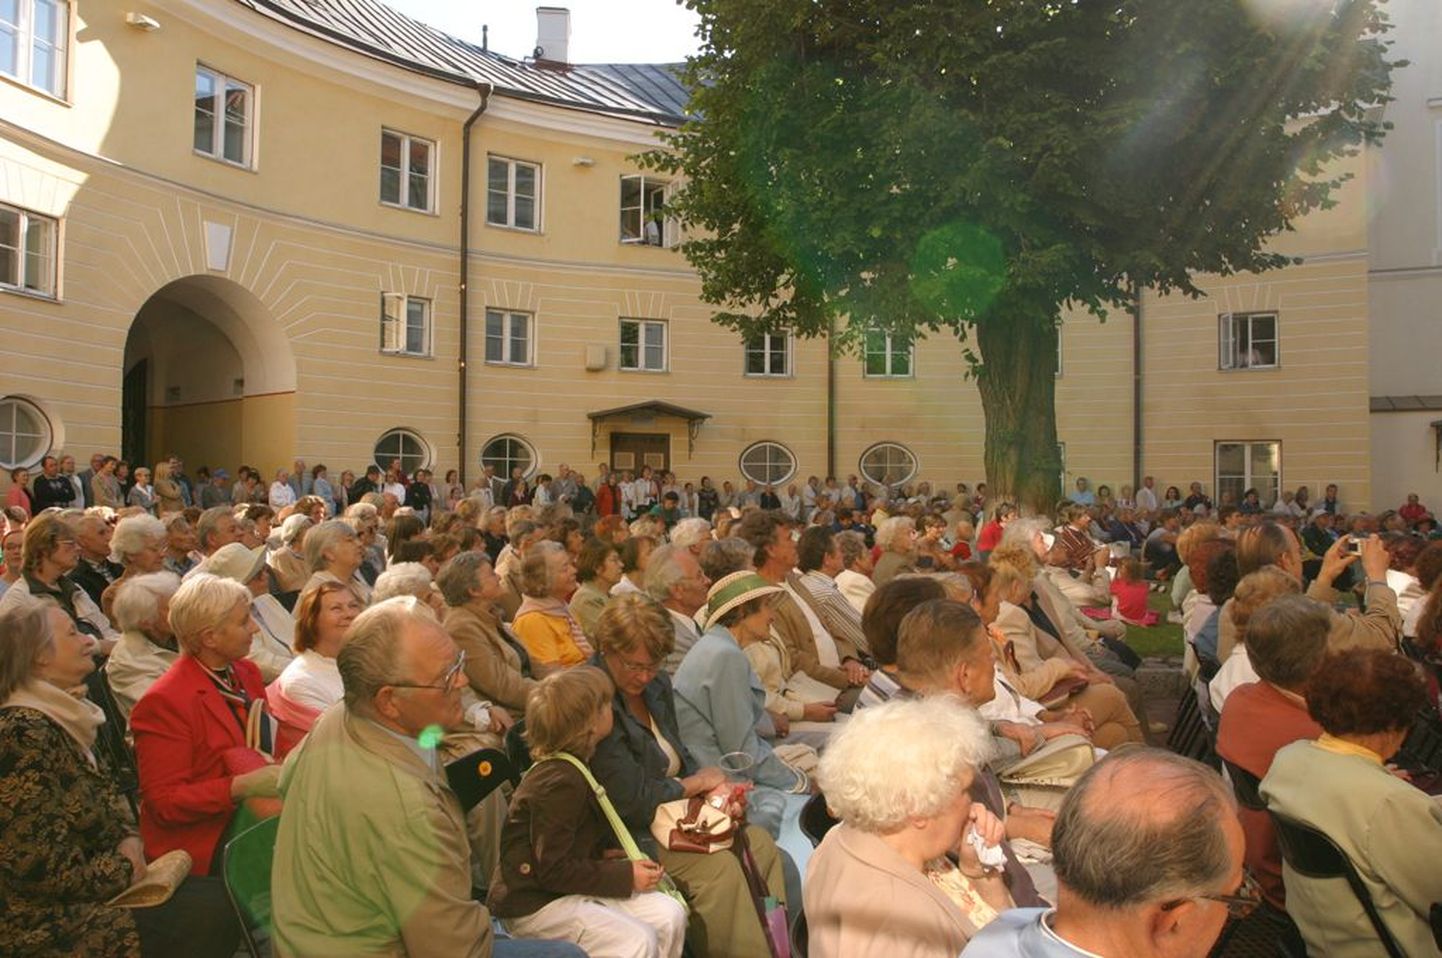 Stenbocki maja õuel toimuvad tasuta kontserdid toovad rahva kokku.